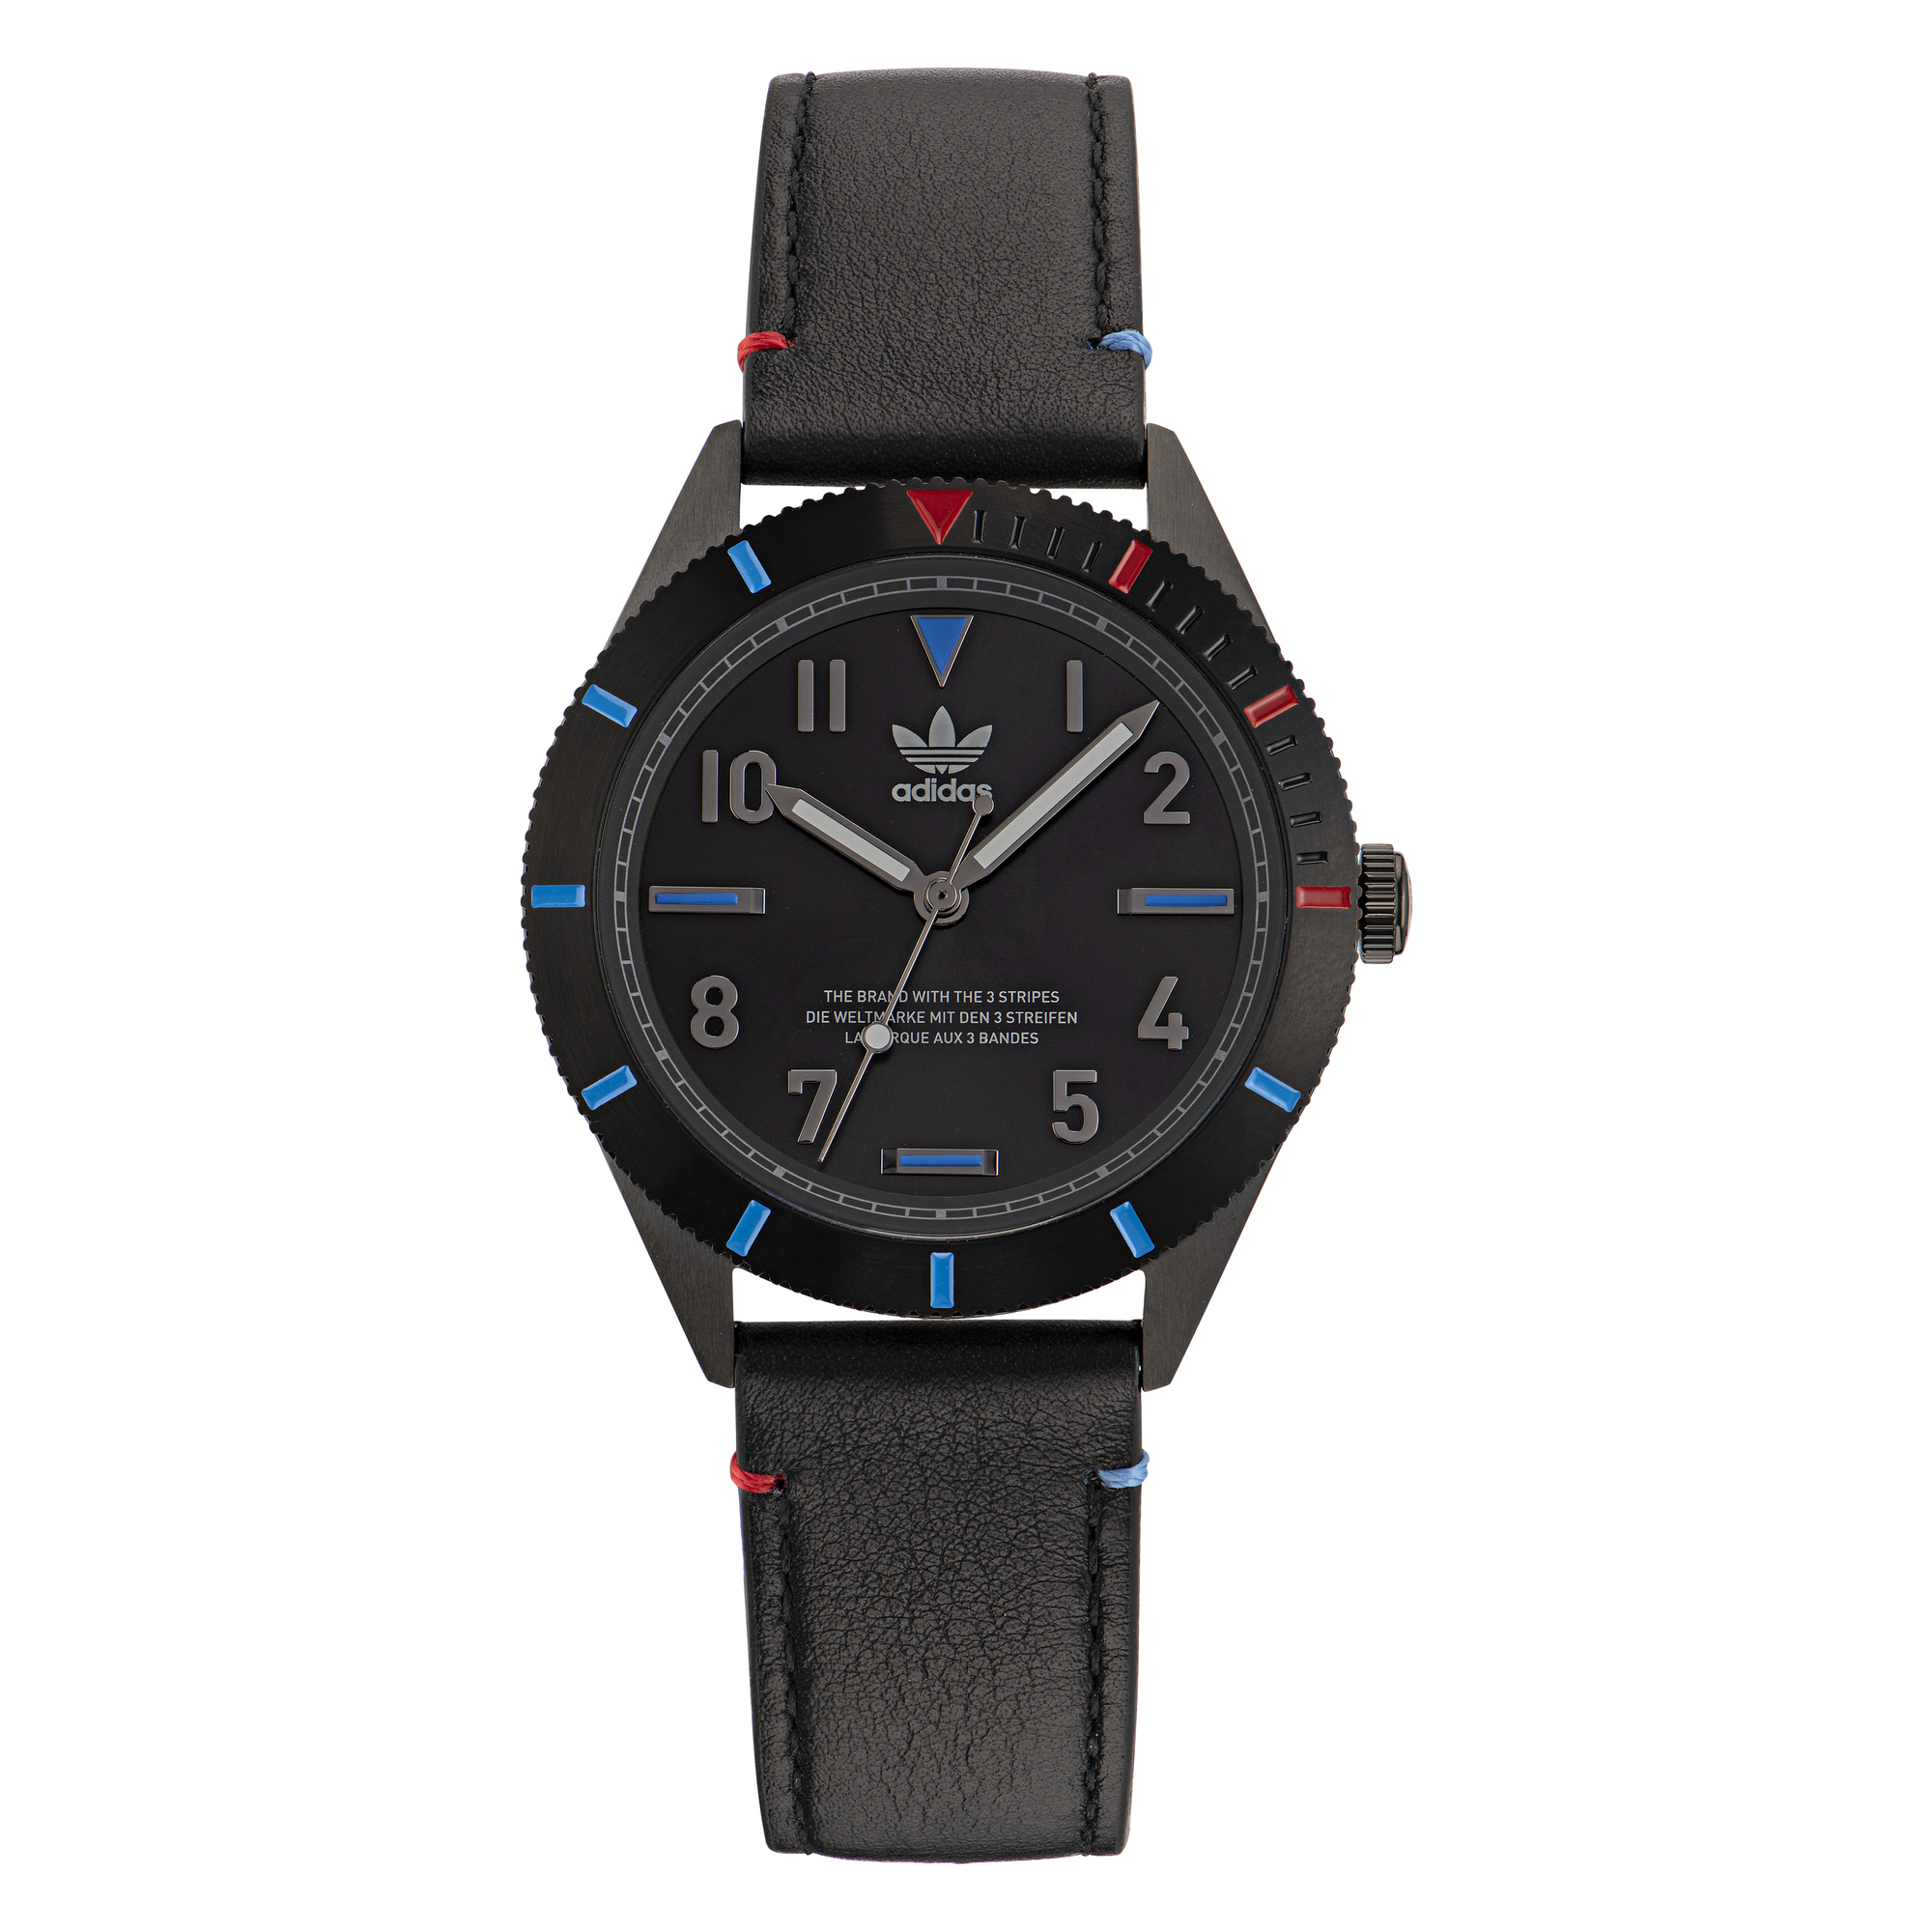 Adidas Edition Three 41mm Dial Watch Australia Direct – AOFH22506 Watch Black